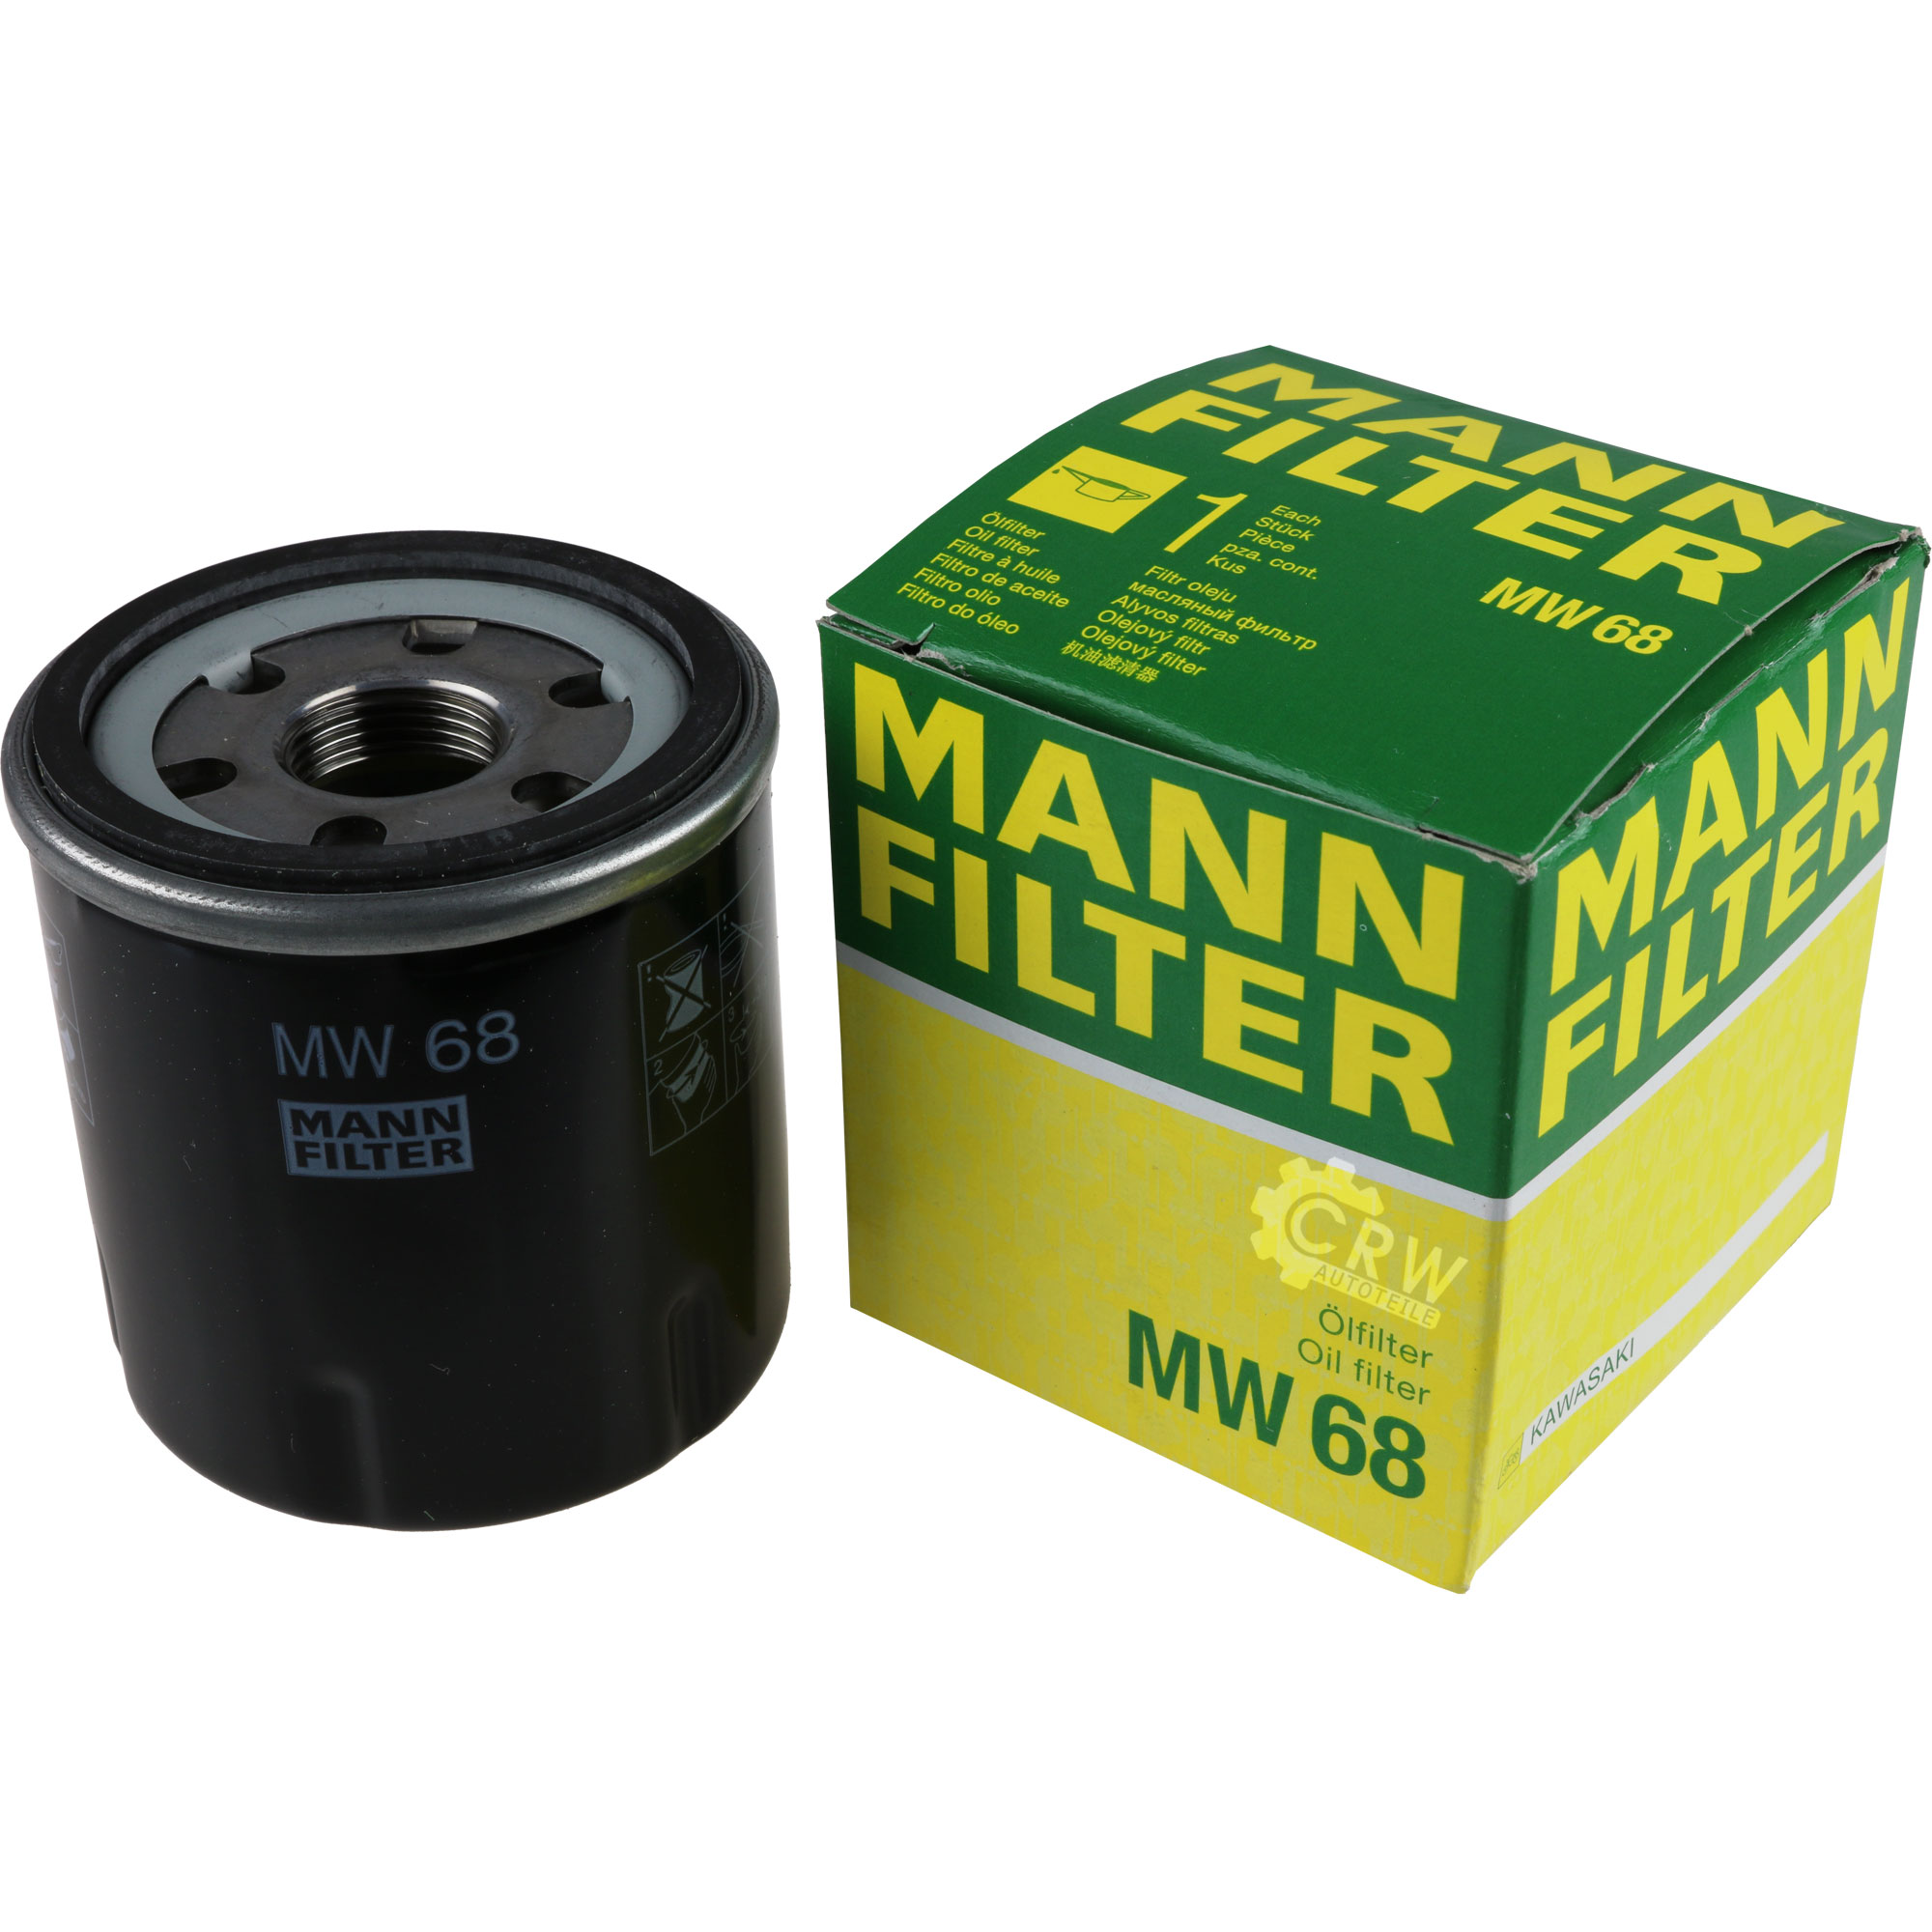 MANN-FILTER Ölfilter MW 68 Oil Filter